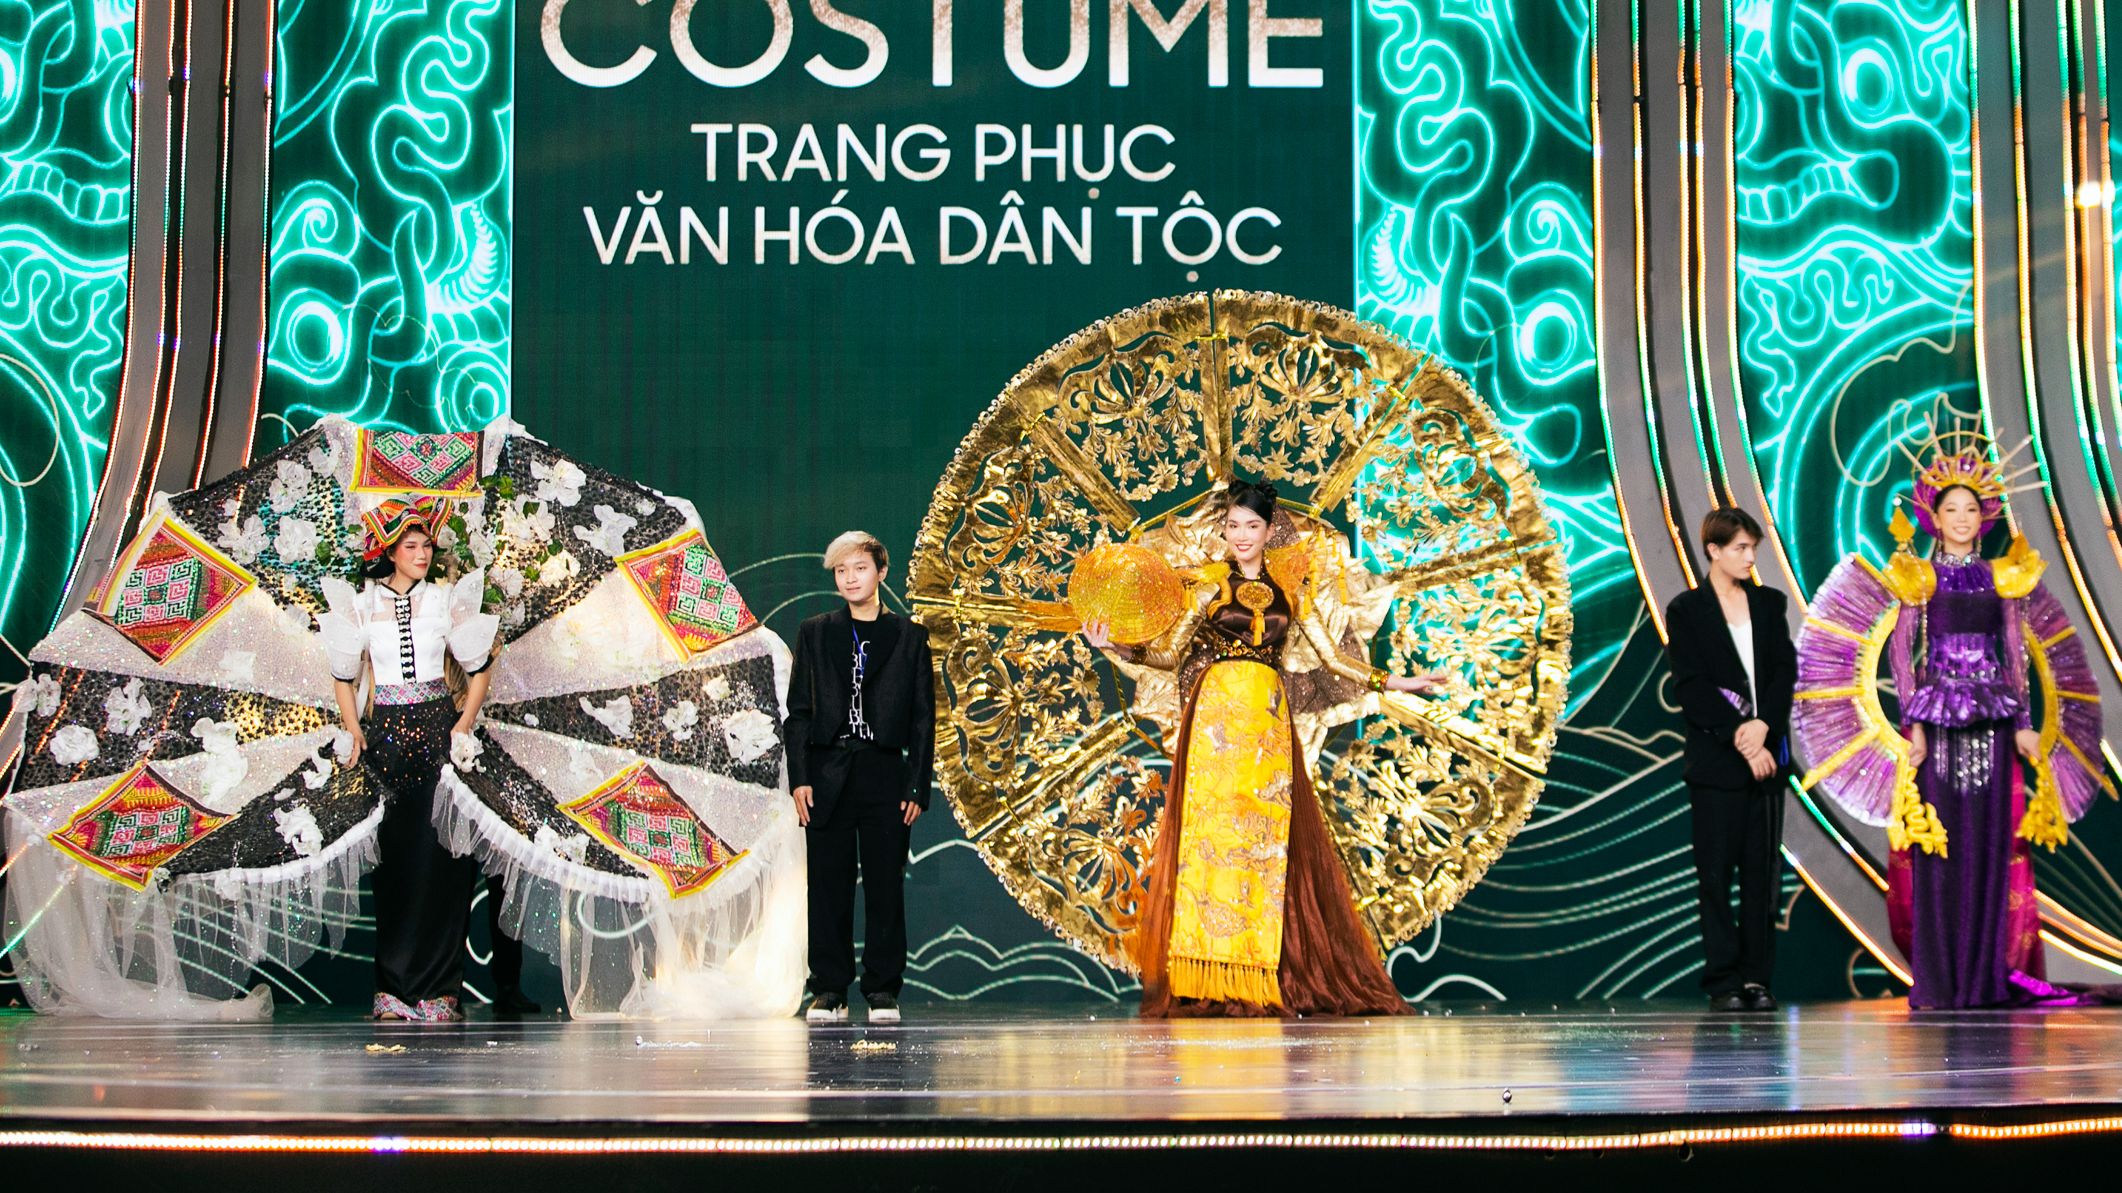 Thiết kế trang phục dân tộc độc đáo sẽ làm cho bạn ngạc nhiên và ủng hộ nhiều hơn cho nghệ thuật của người dân Việt. Hãy xem hình ảnh để khám phá những chi tiết tinh tế và sáng tạo trong từng thiết kế đầy màu sắc.